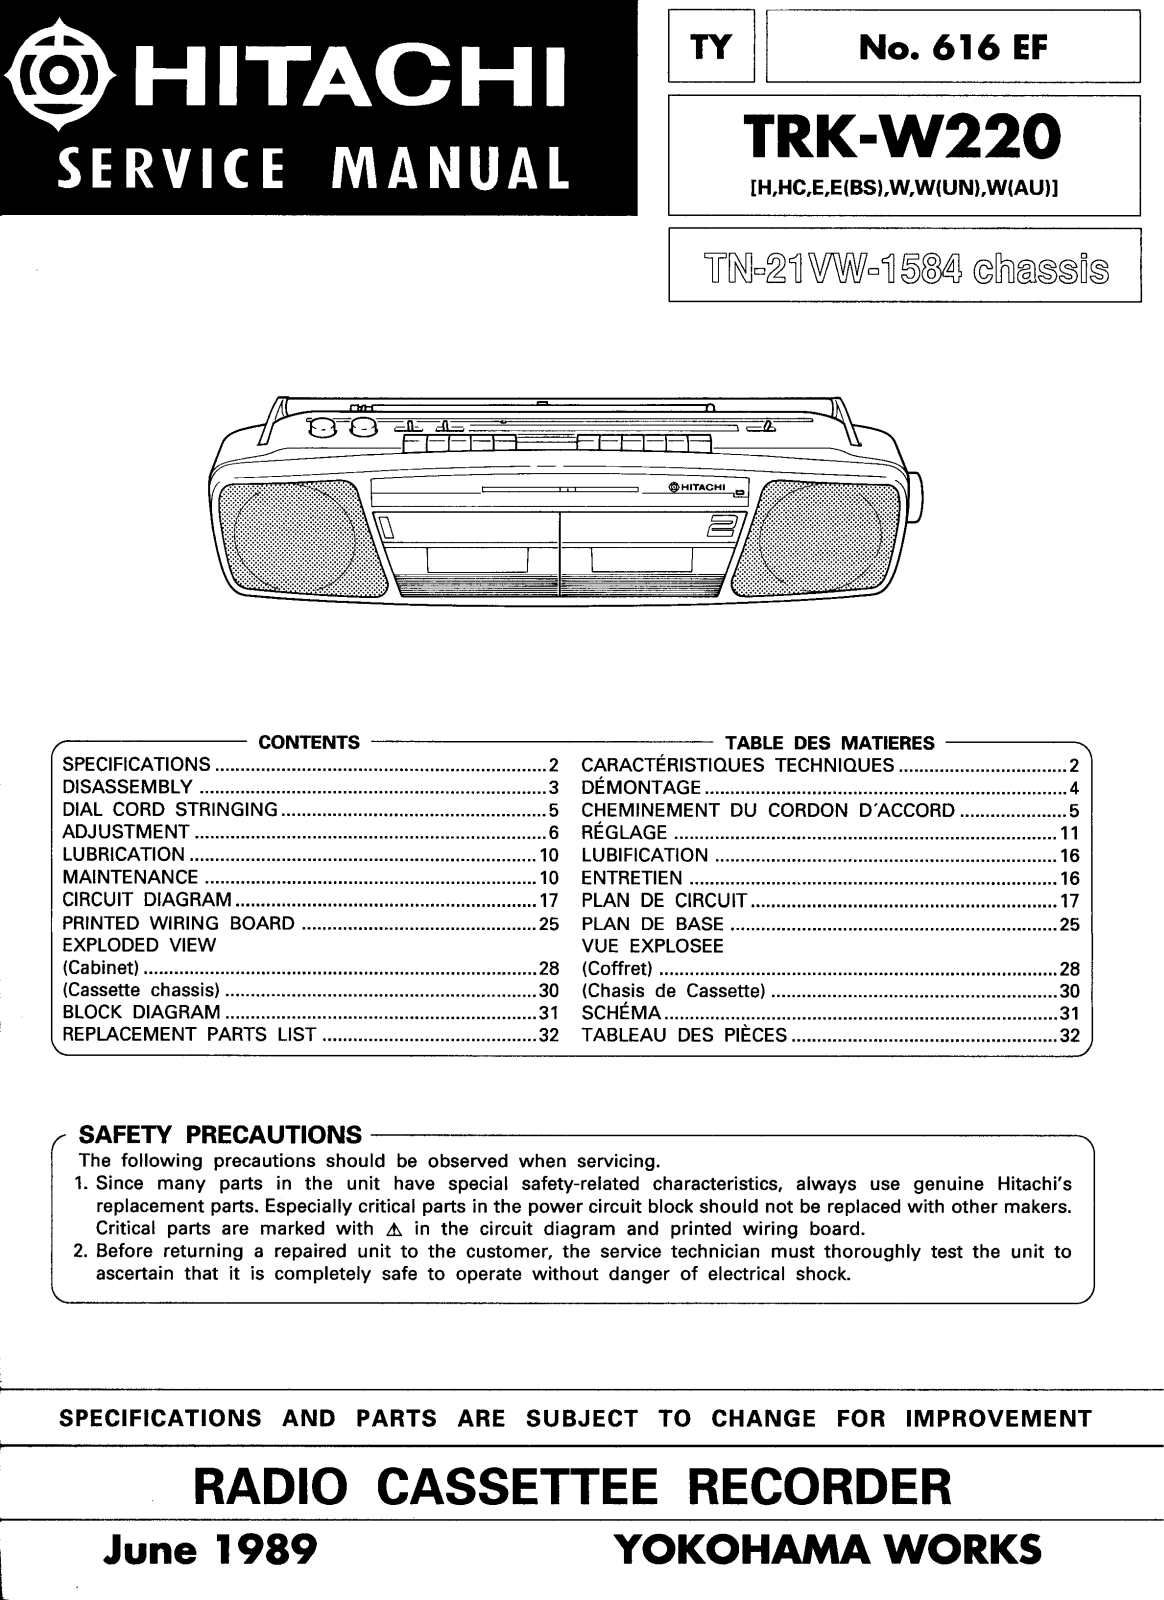 Hitachi TRK-W220 Service Manual